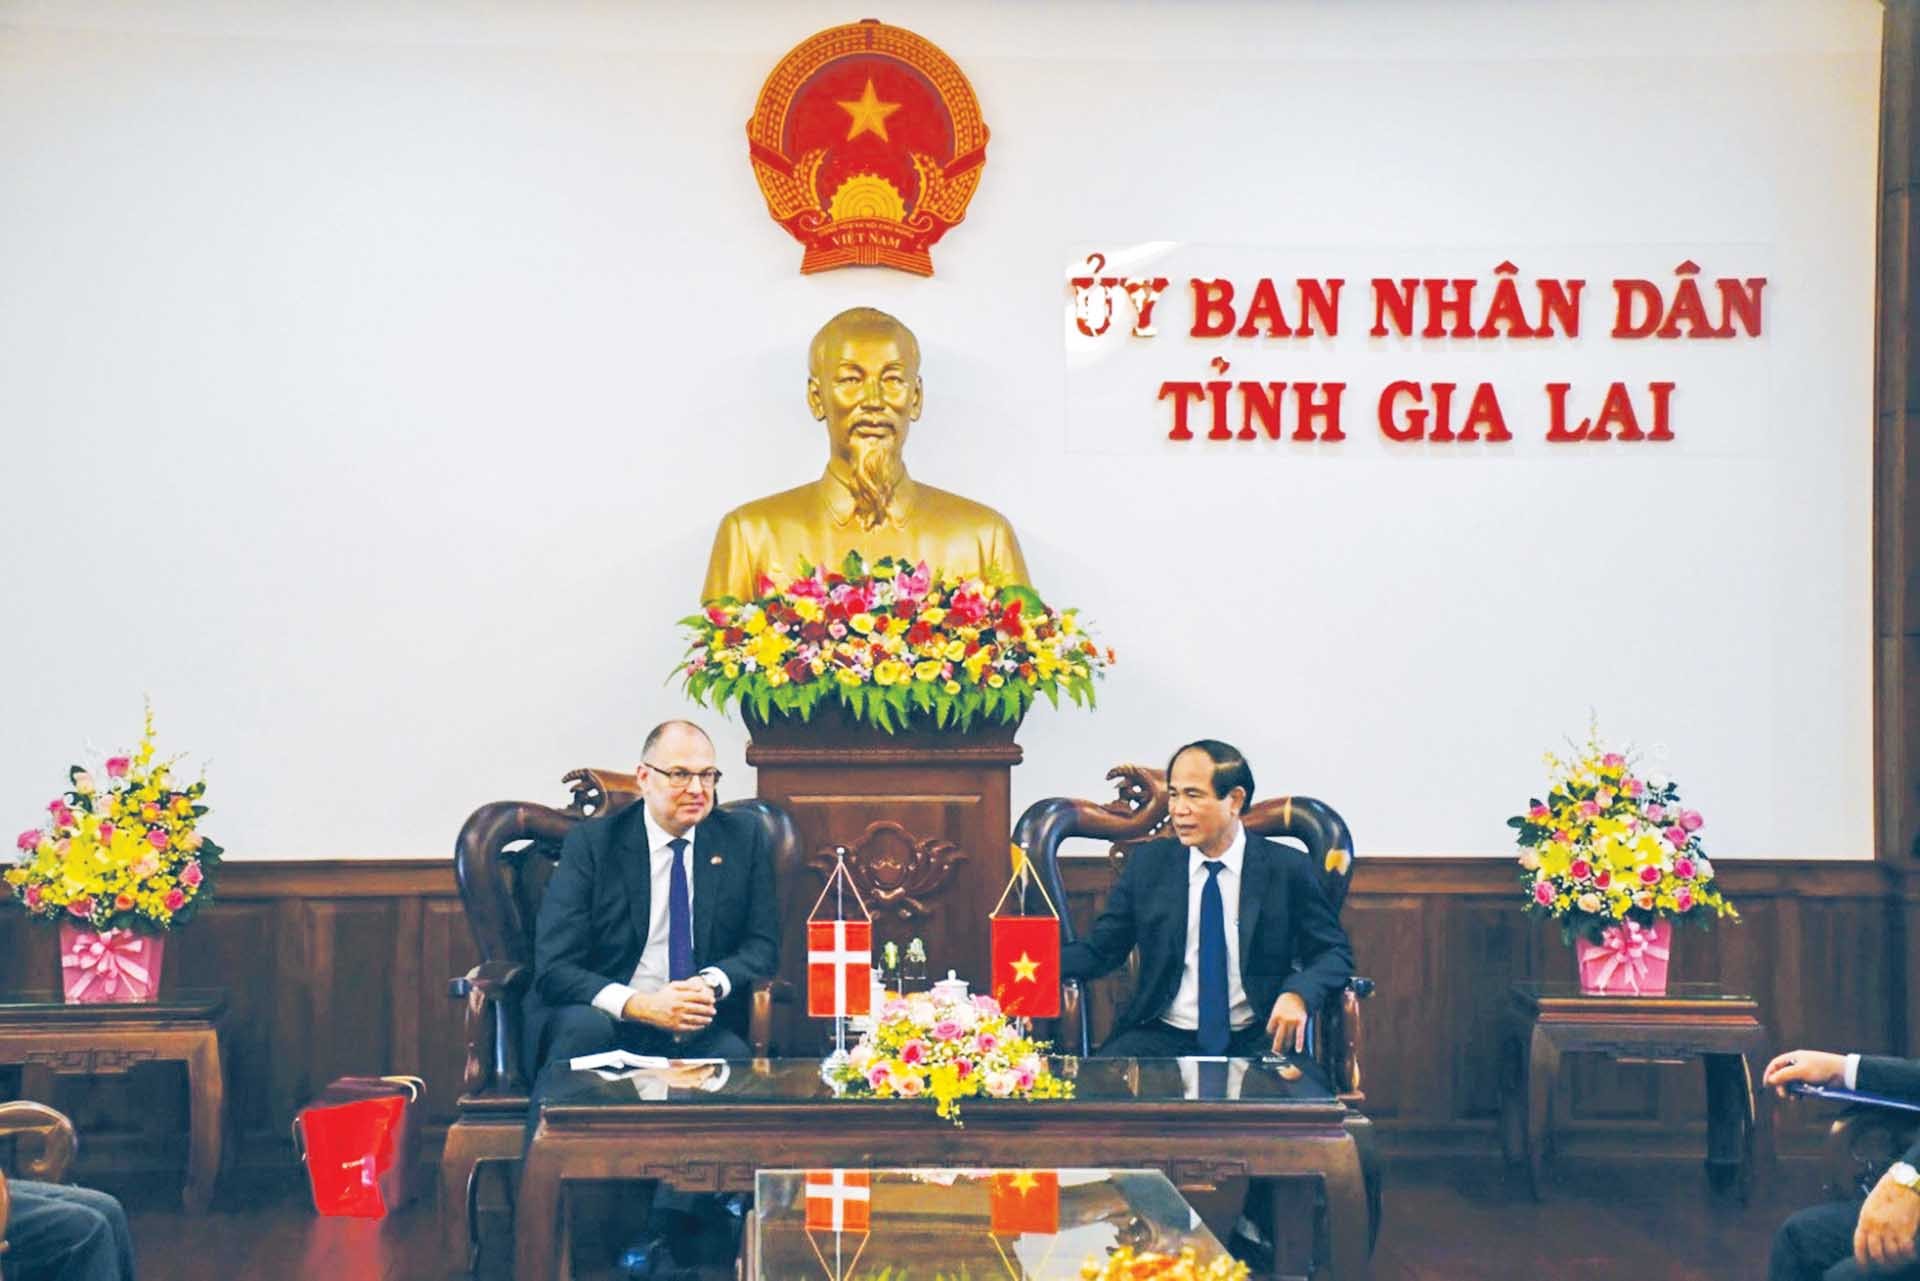 Chủ tịch UBND tỉnh Gia Lai Võ Ngọc Thành tiếp Đại sứ Đan Mạch tại Việt Nam Kim Hojlund Christensen, ngày 19/3/2021.